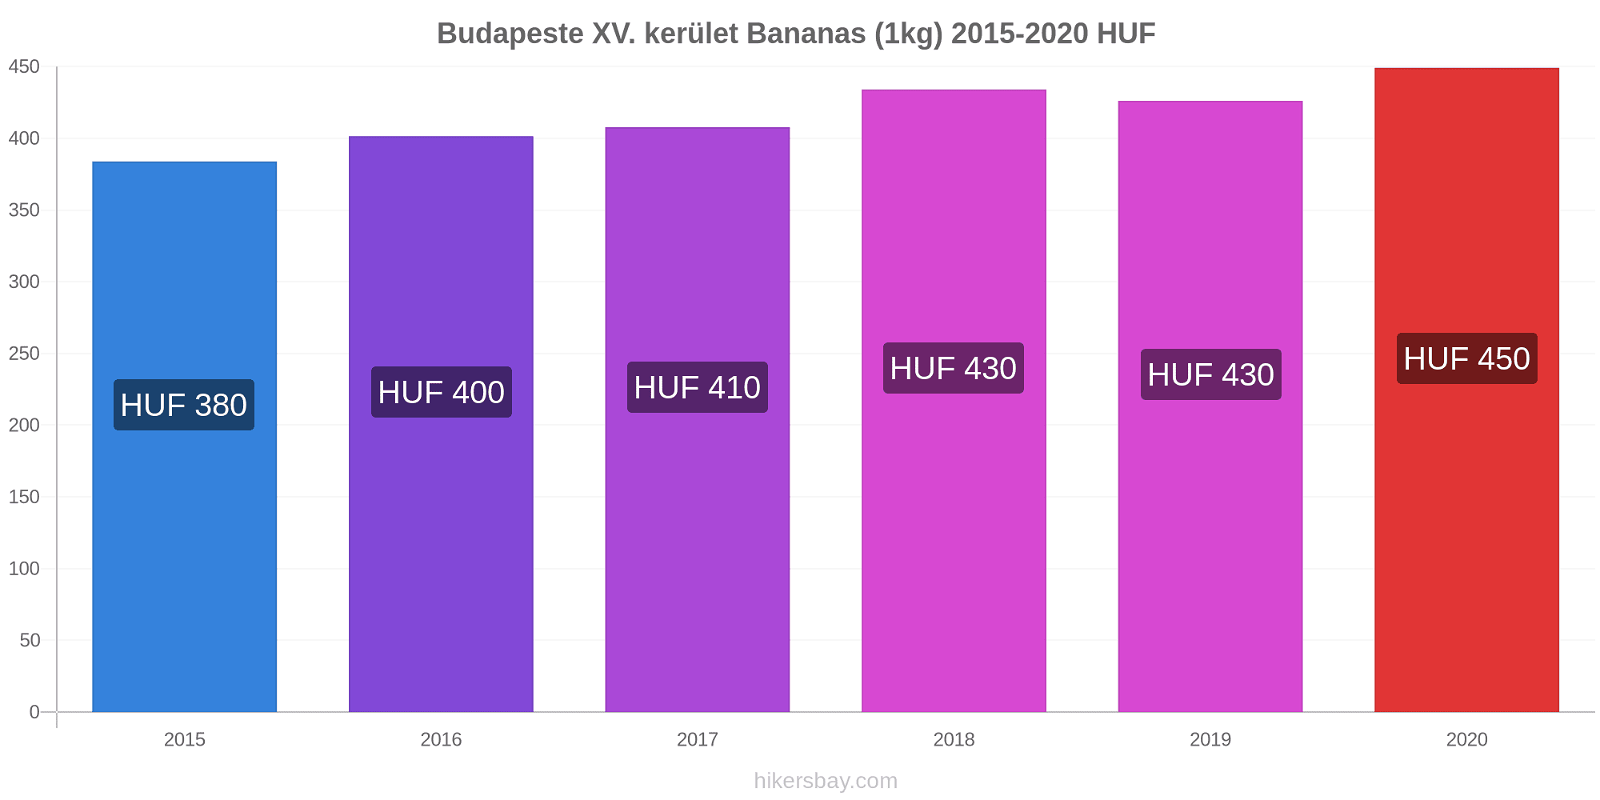 Budapeste XV. kerület variação de preço Banana (1kg) hikersbay.com